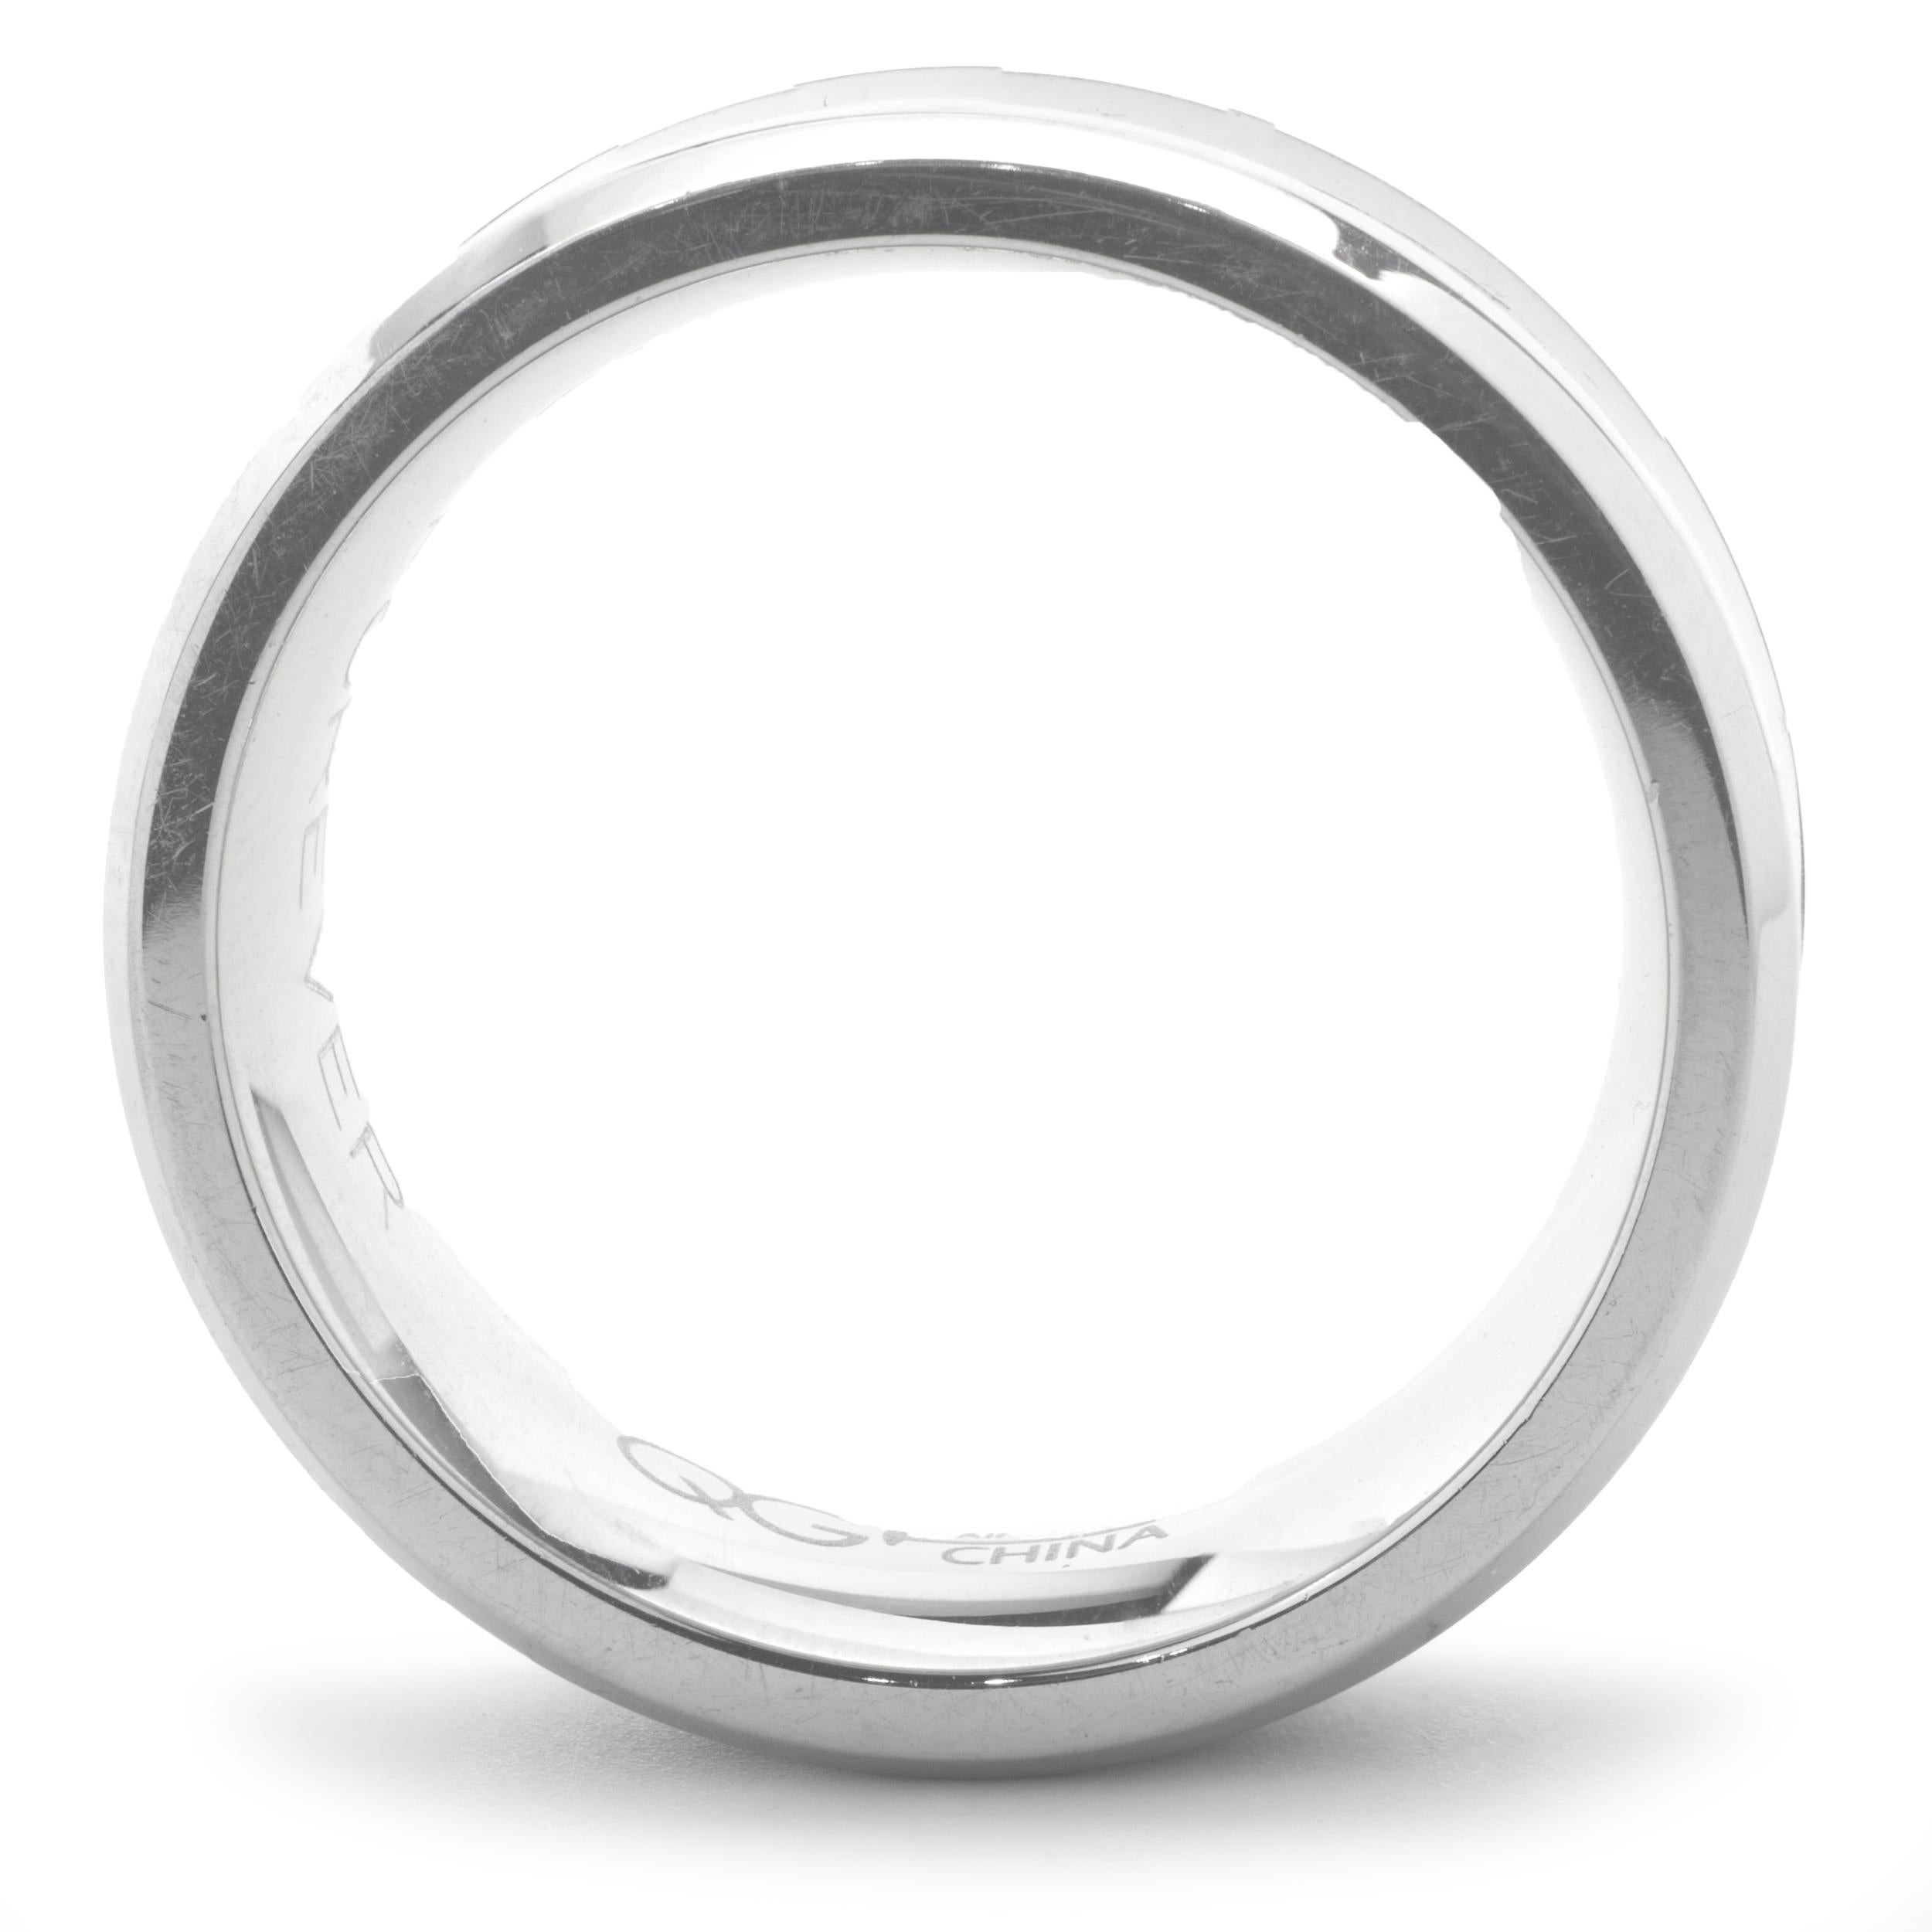 Designer: individuell 
Material: Rostfreier Stahl
Abmessungen: Band ist 8 mm breit 
Ringgröße: 8.5
Gewicht: 6,55 Gramm
